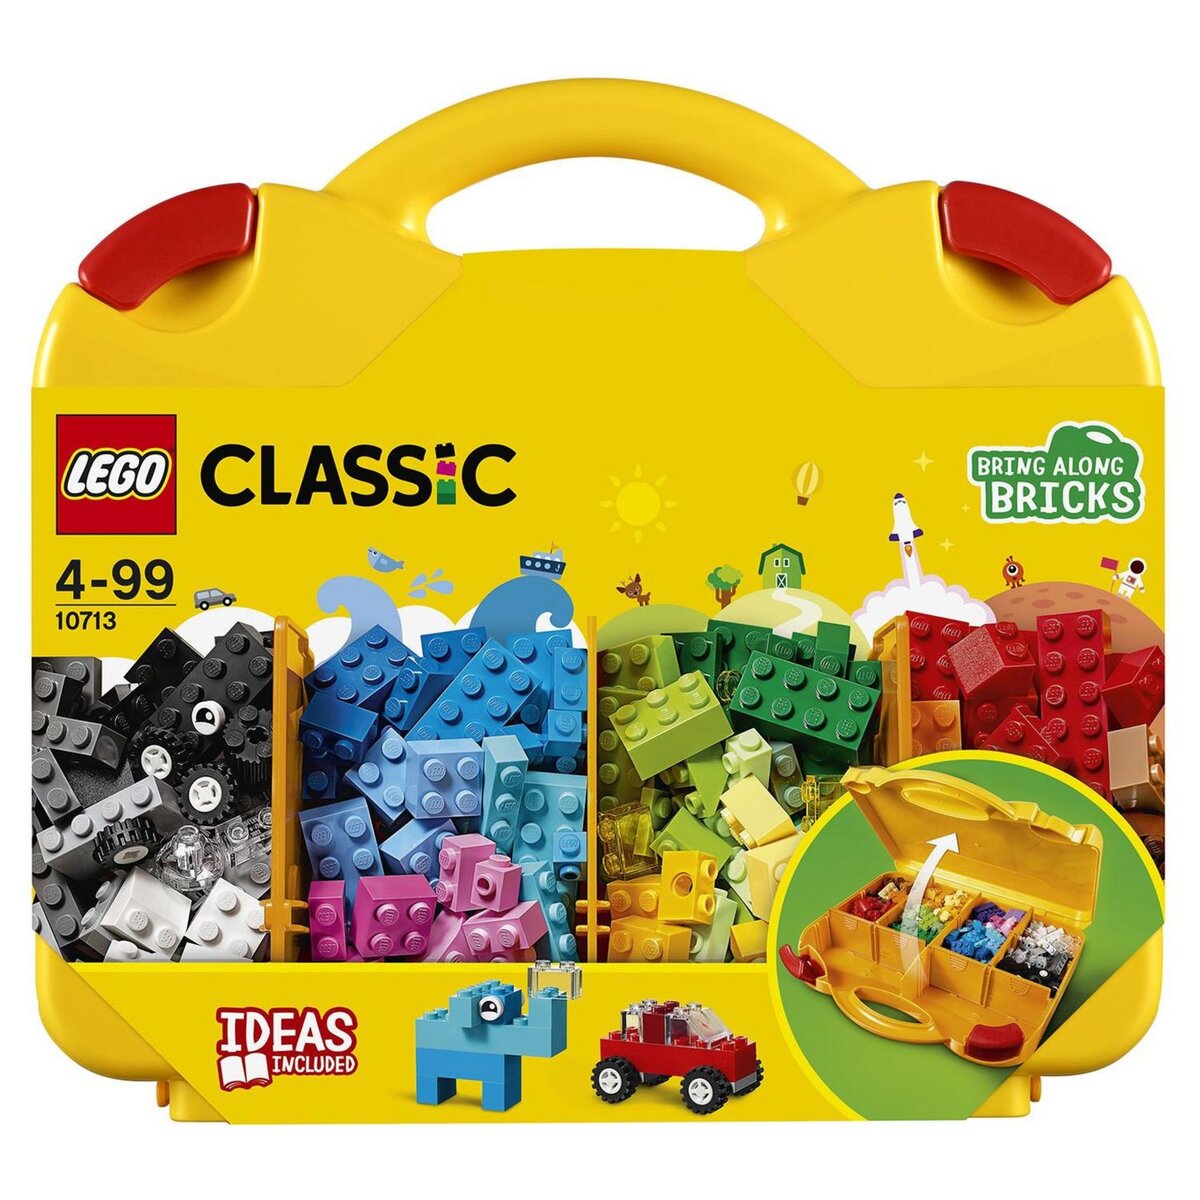 Boîte de Rangement To Go - Bleu LEGO BOX